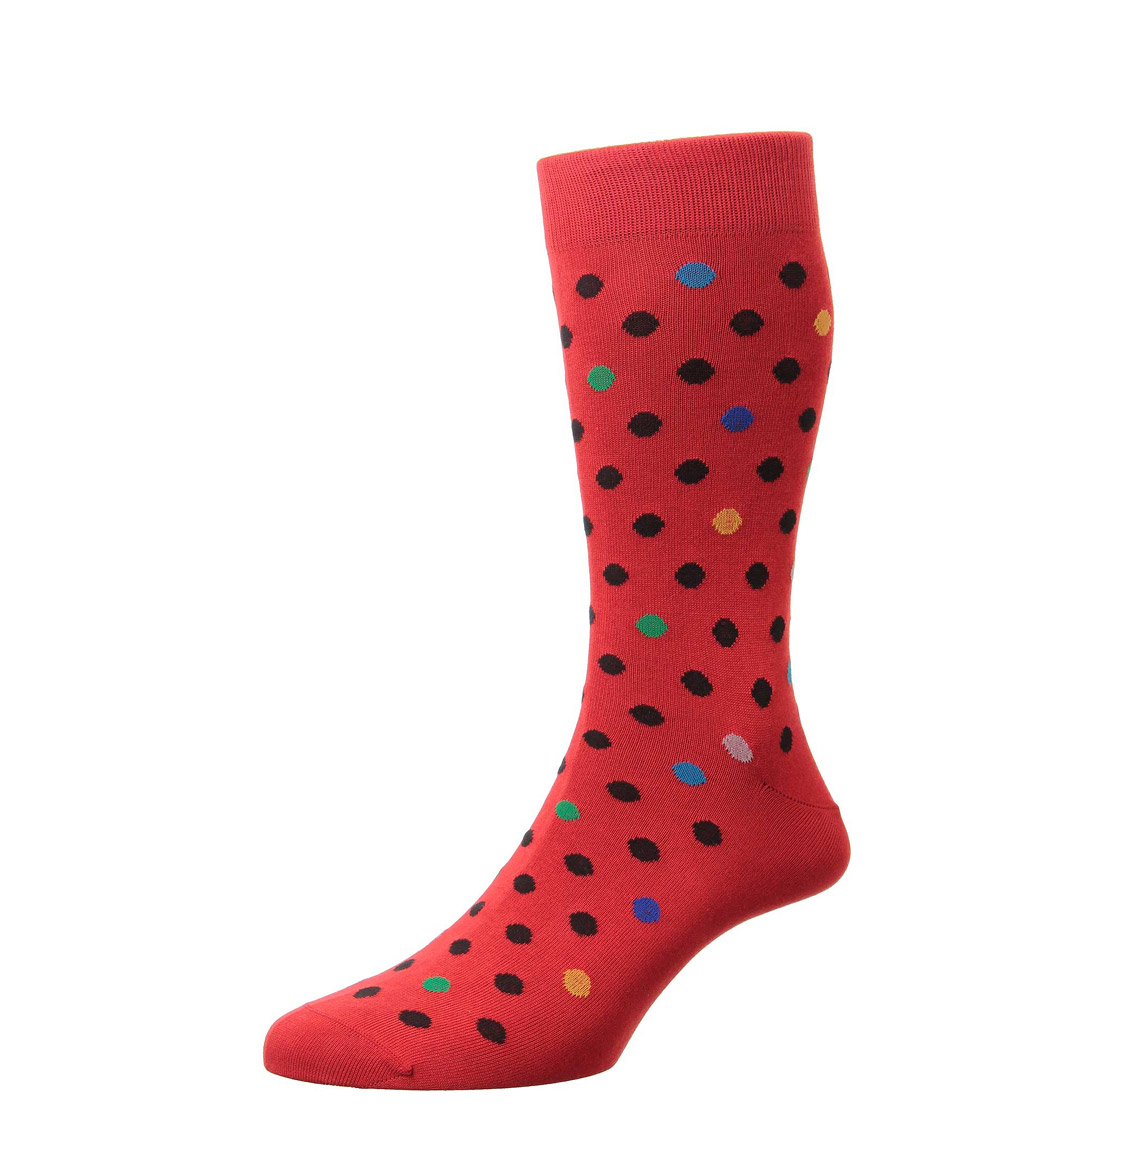 Pantherella Multi-Spot Socks Chilli Red